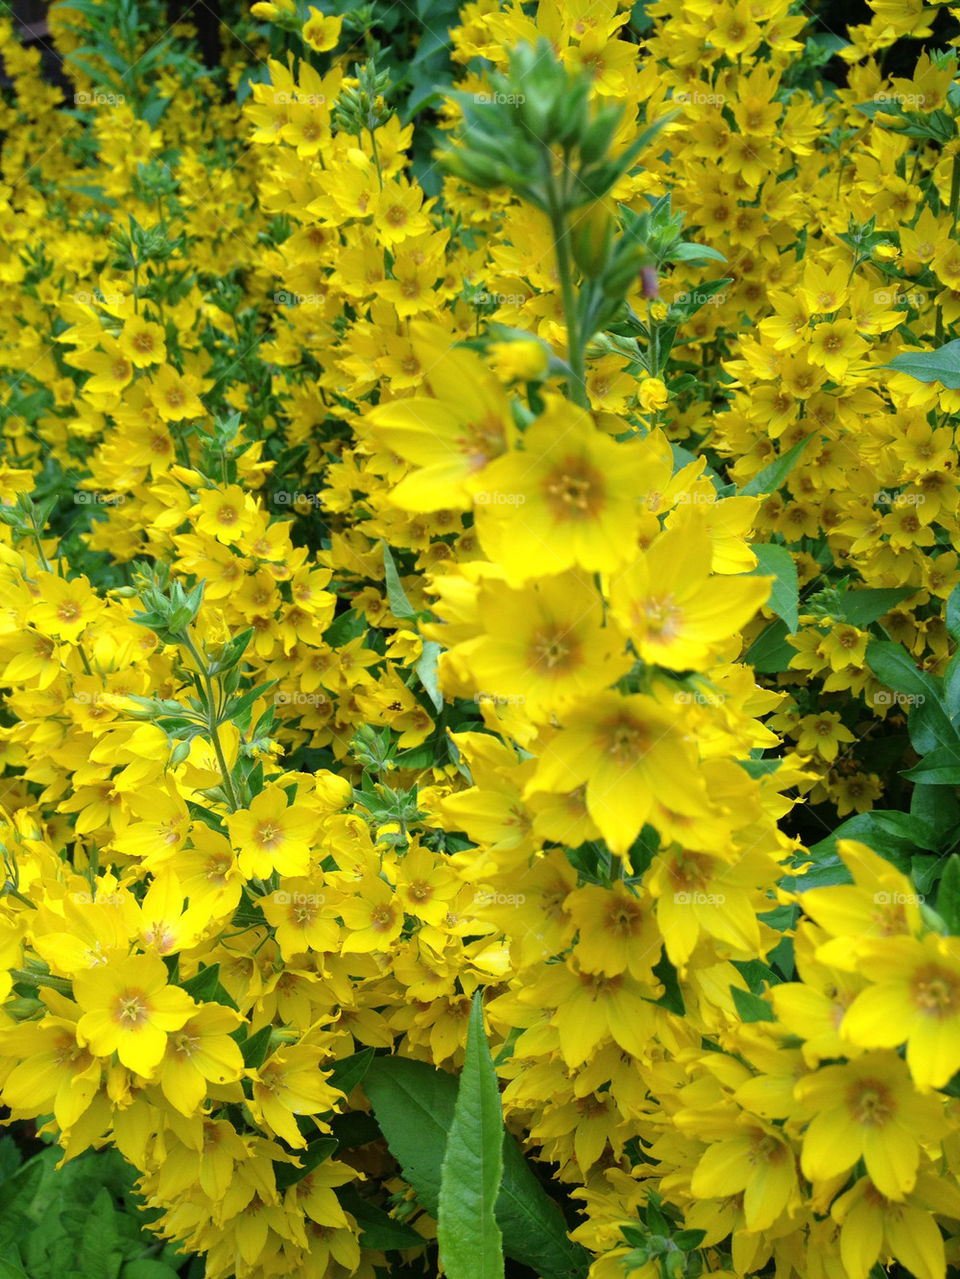 flowers garden yellow nature by sandborgskan